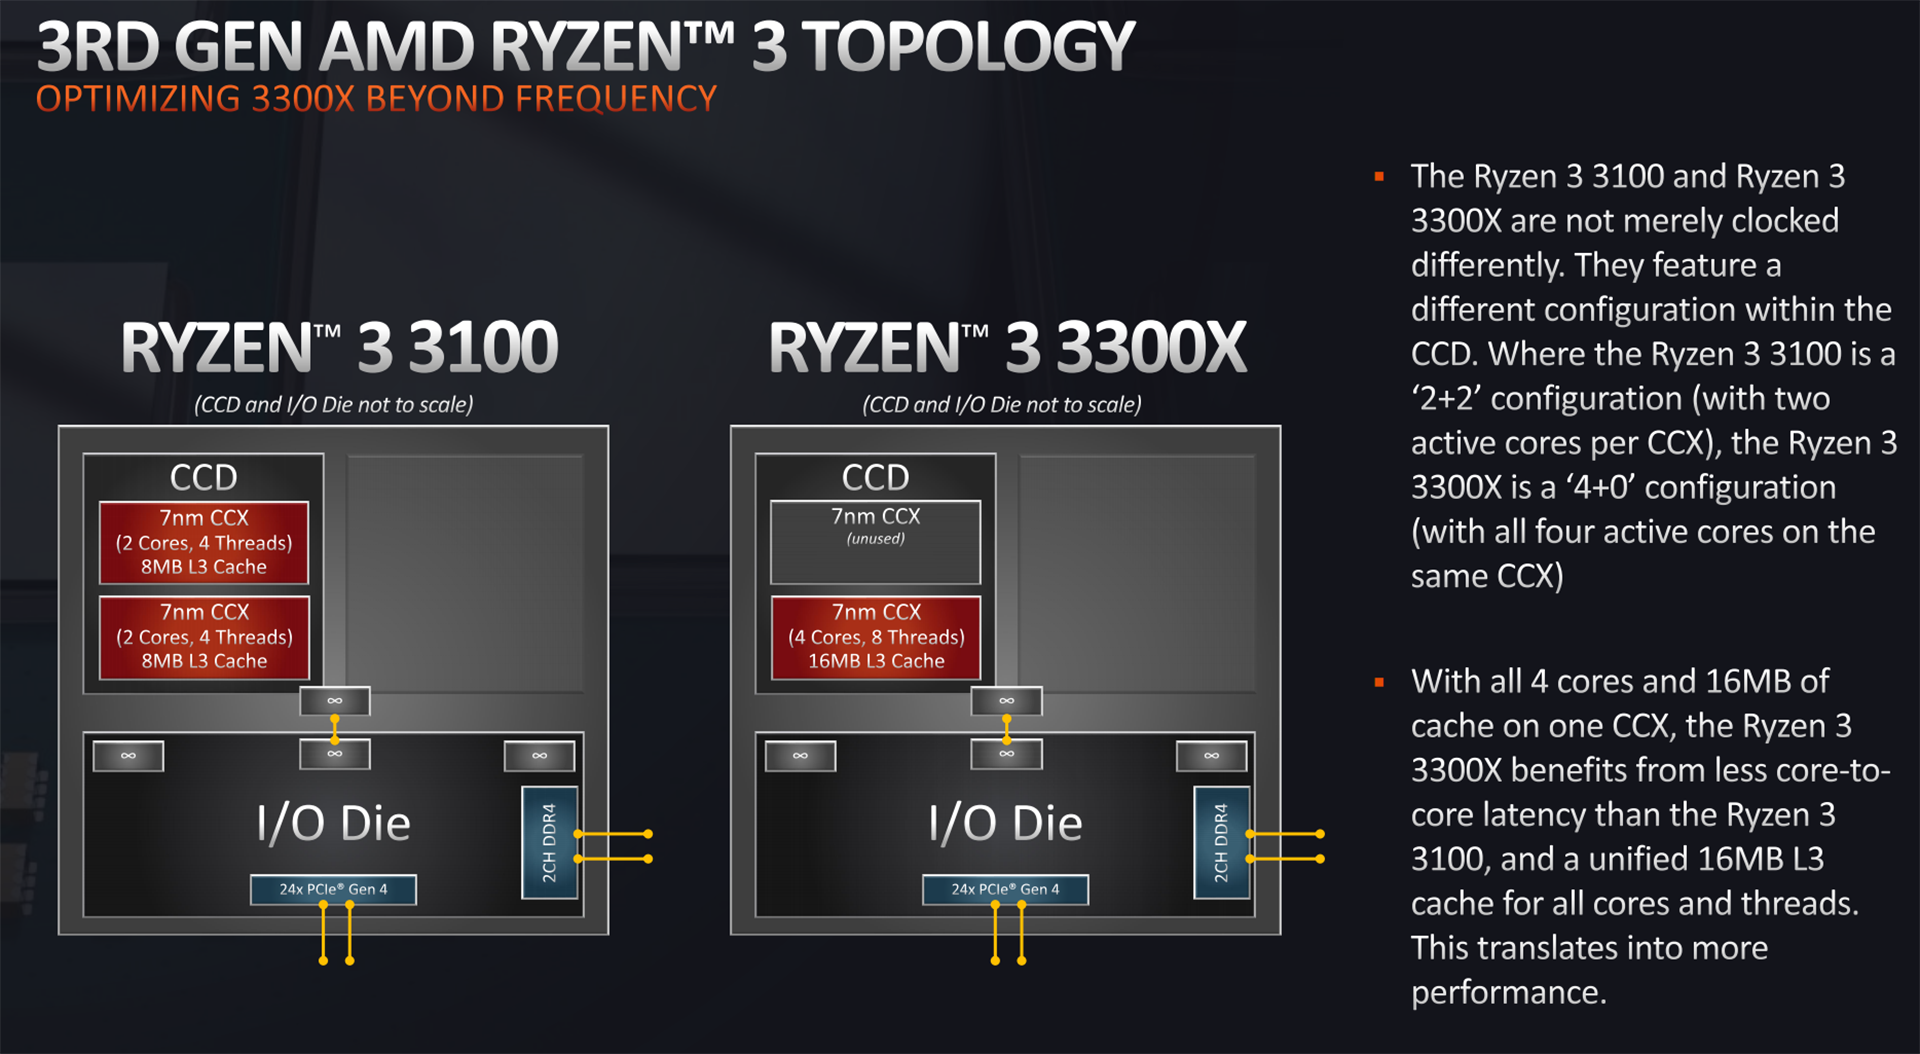 Review: AMD Ryzen 3 3300X and Ryzen 3 3100 - CPU - HEXUS.net